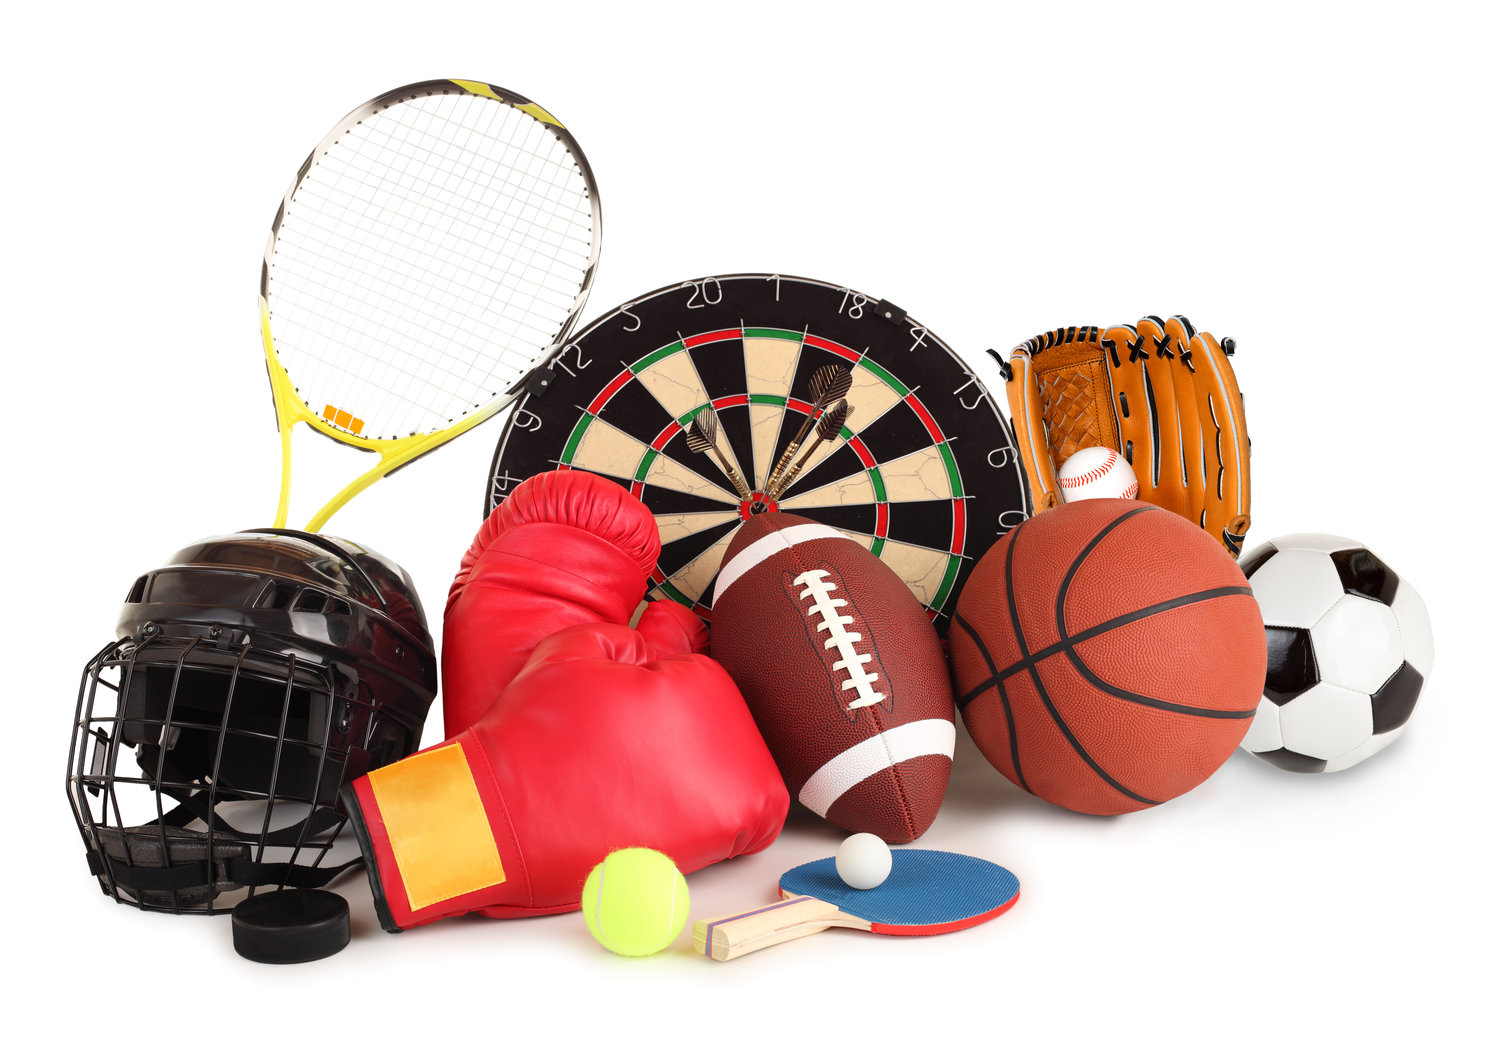 Sports items. Спортивные принадлежности. Спортивные атрибуты. Спортивный инвентарь для спорта. Спортинвентарь для детей.